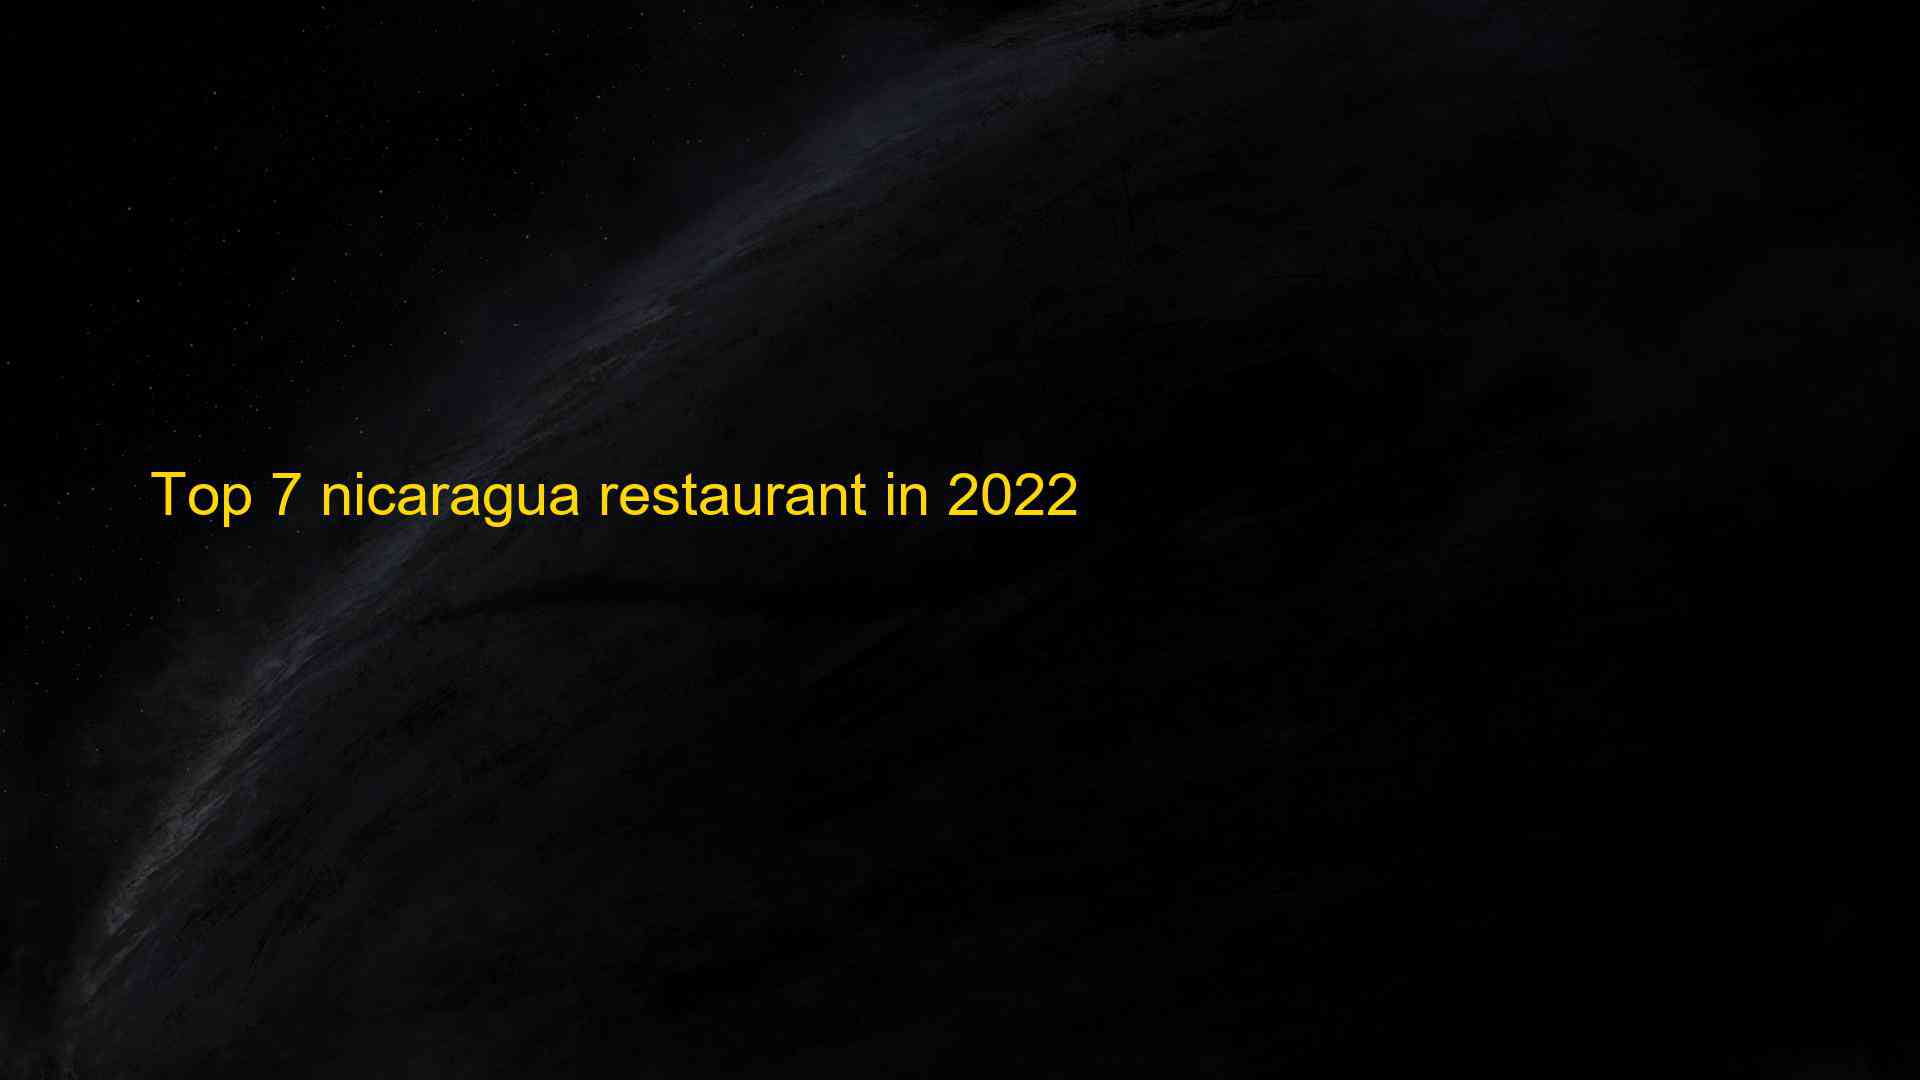 Top 7 nicaragua restaurant in 2022 1663348939